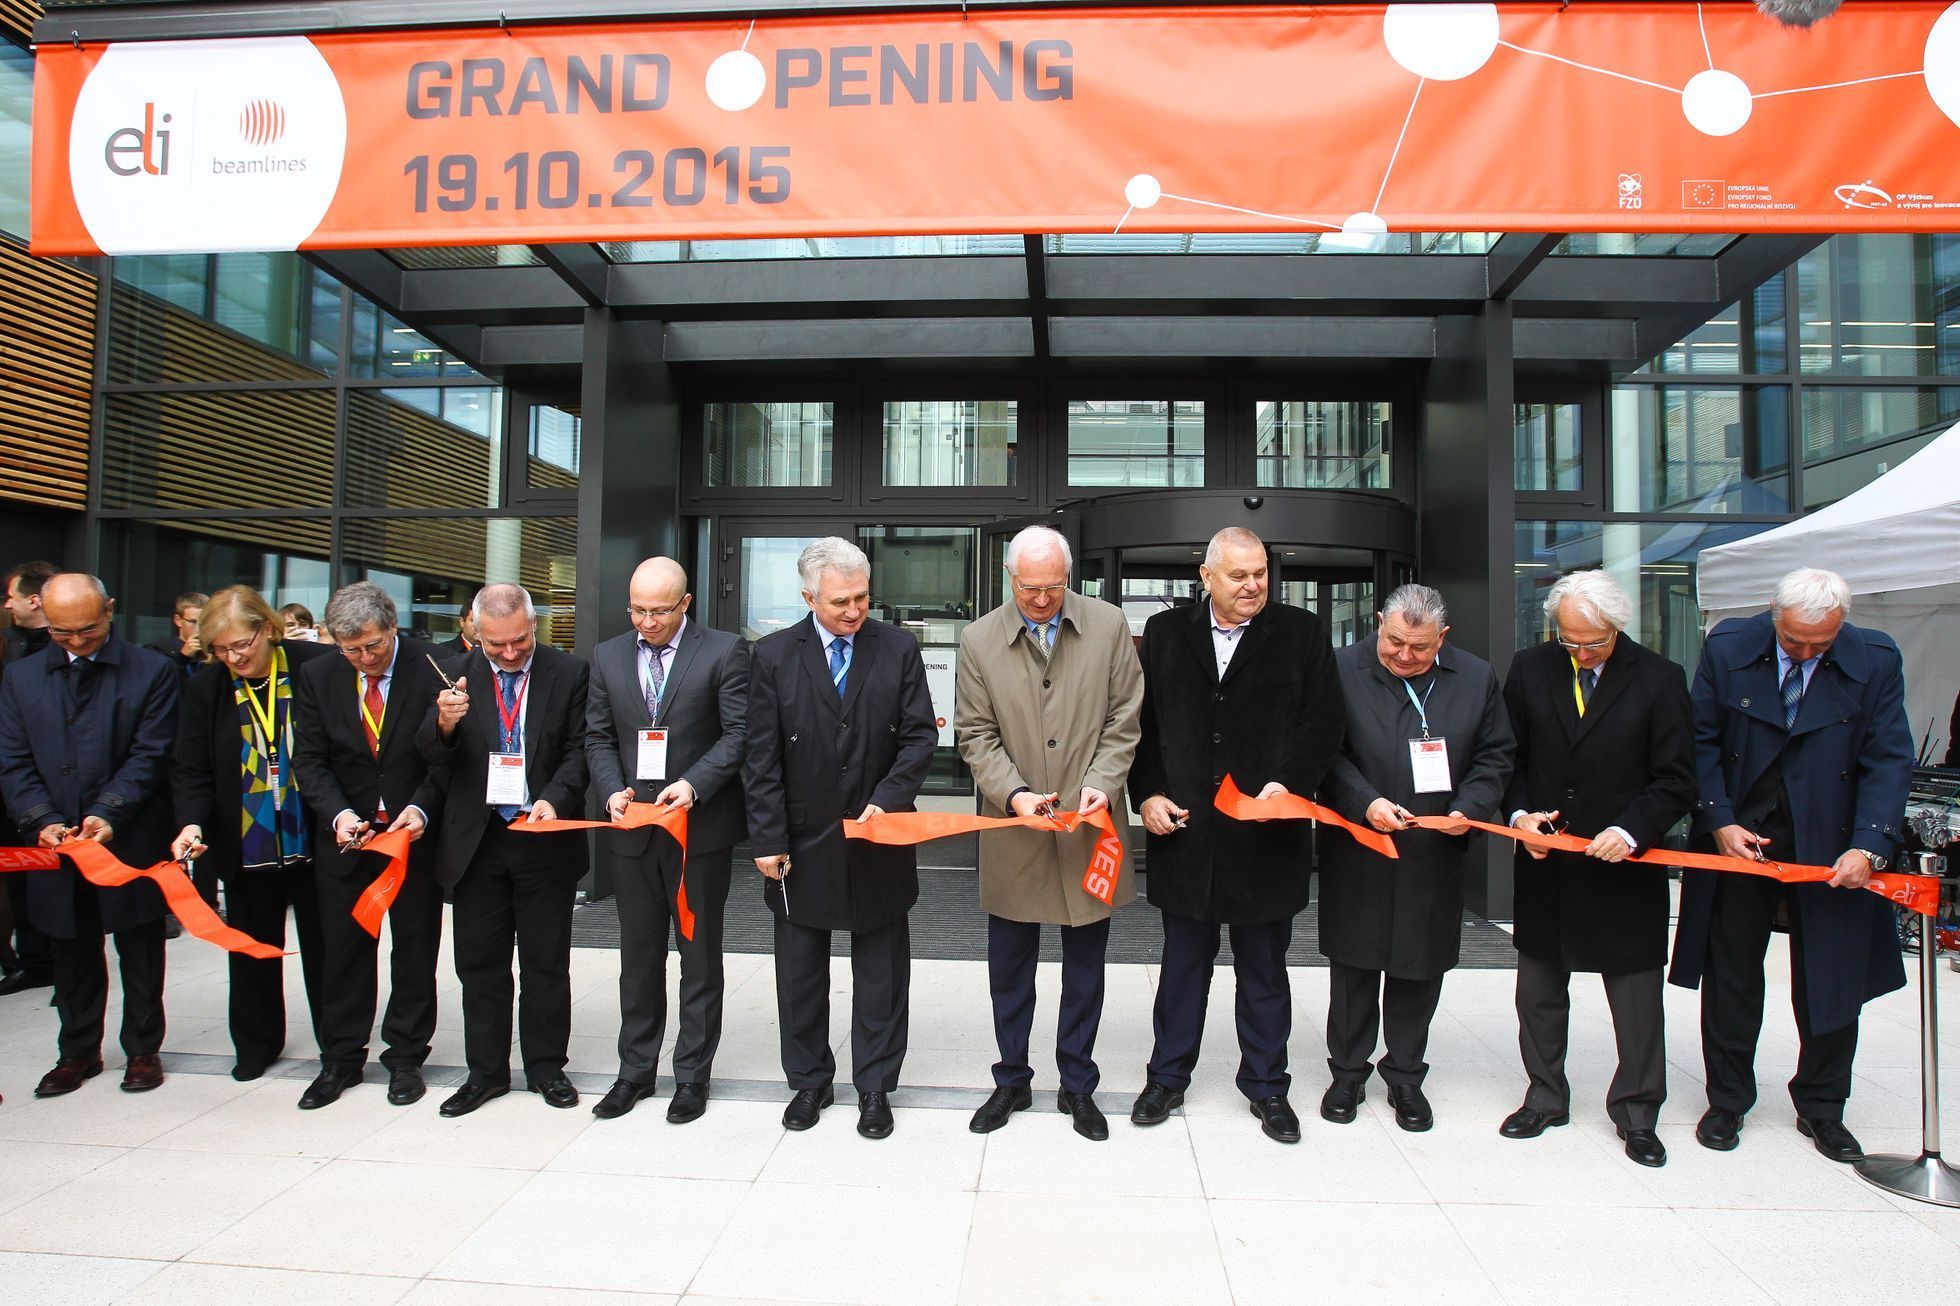 Laserové centrum ELI Beamlines v Dolních Břežanech - otevření 19.10.2015